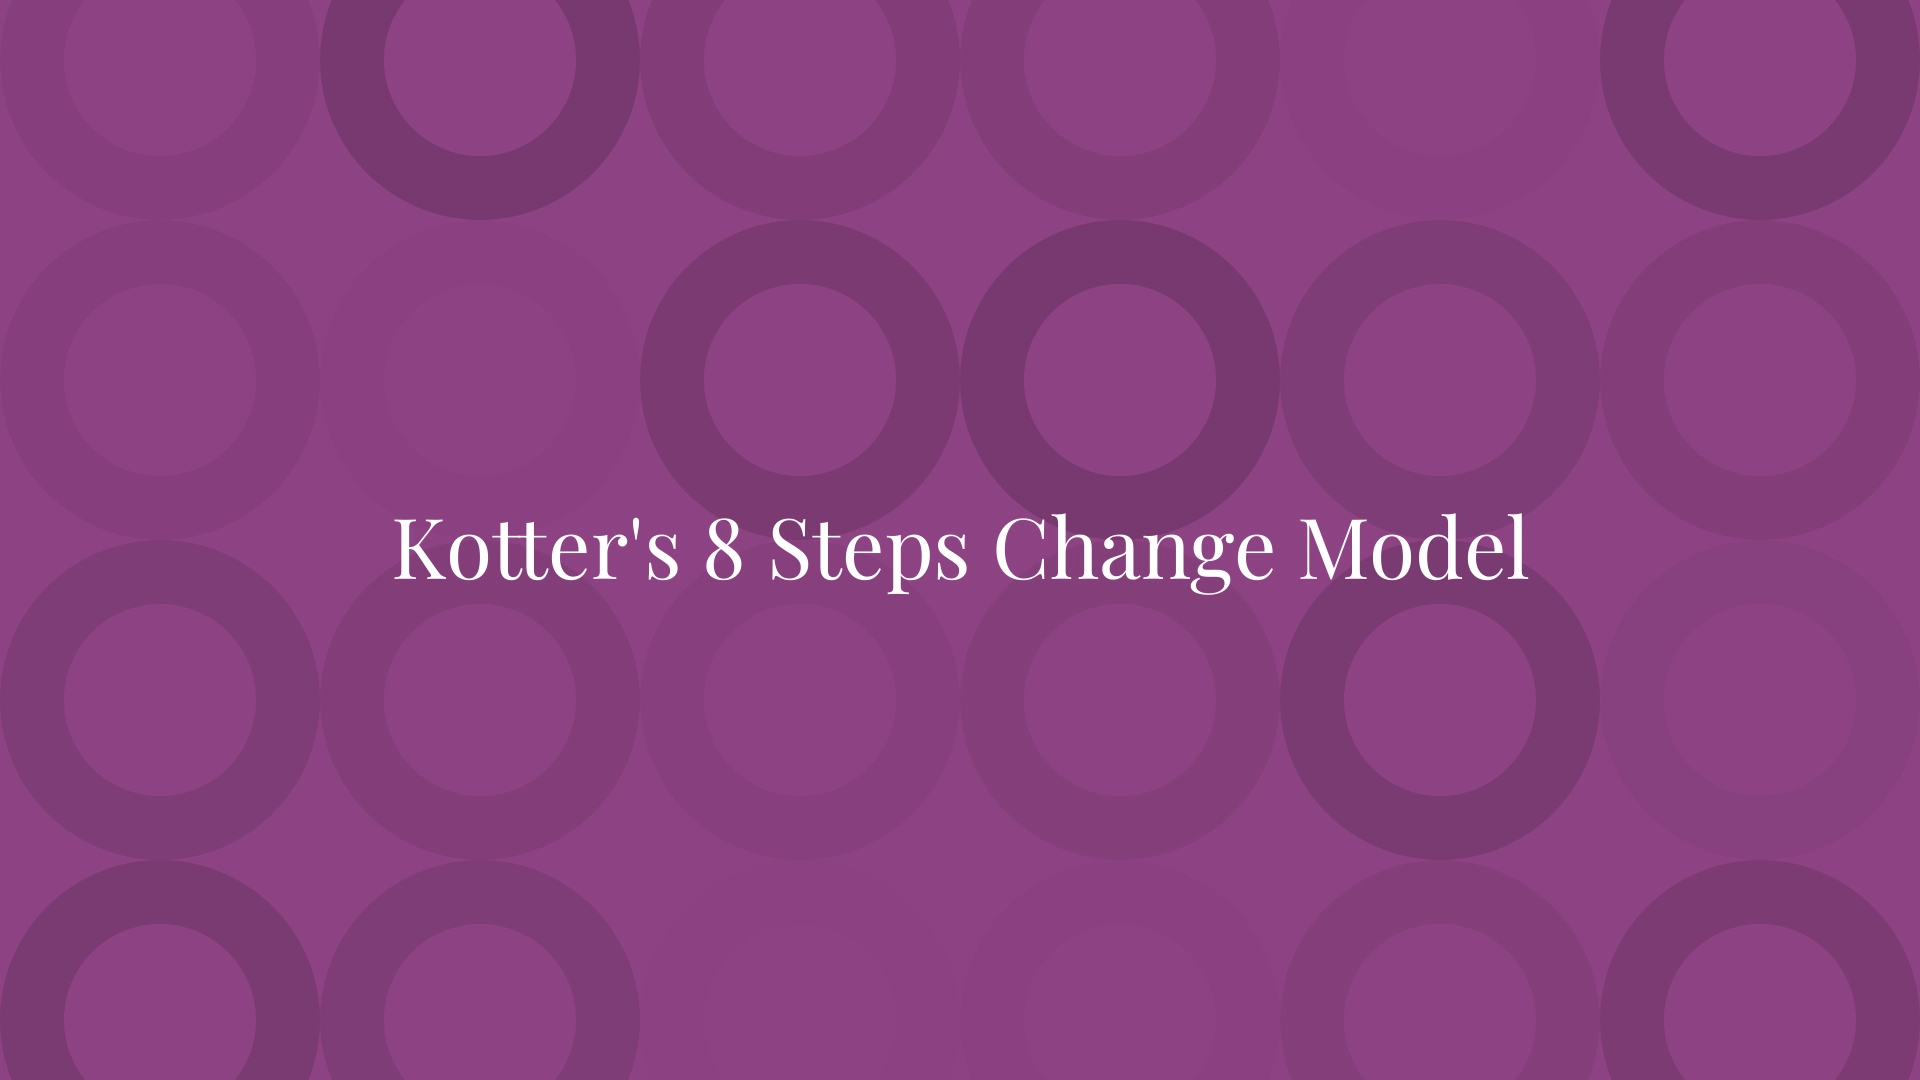 Kotter's 8 Steps Change Model